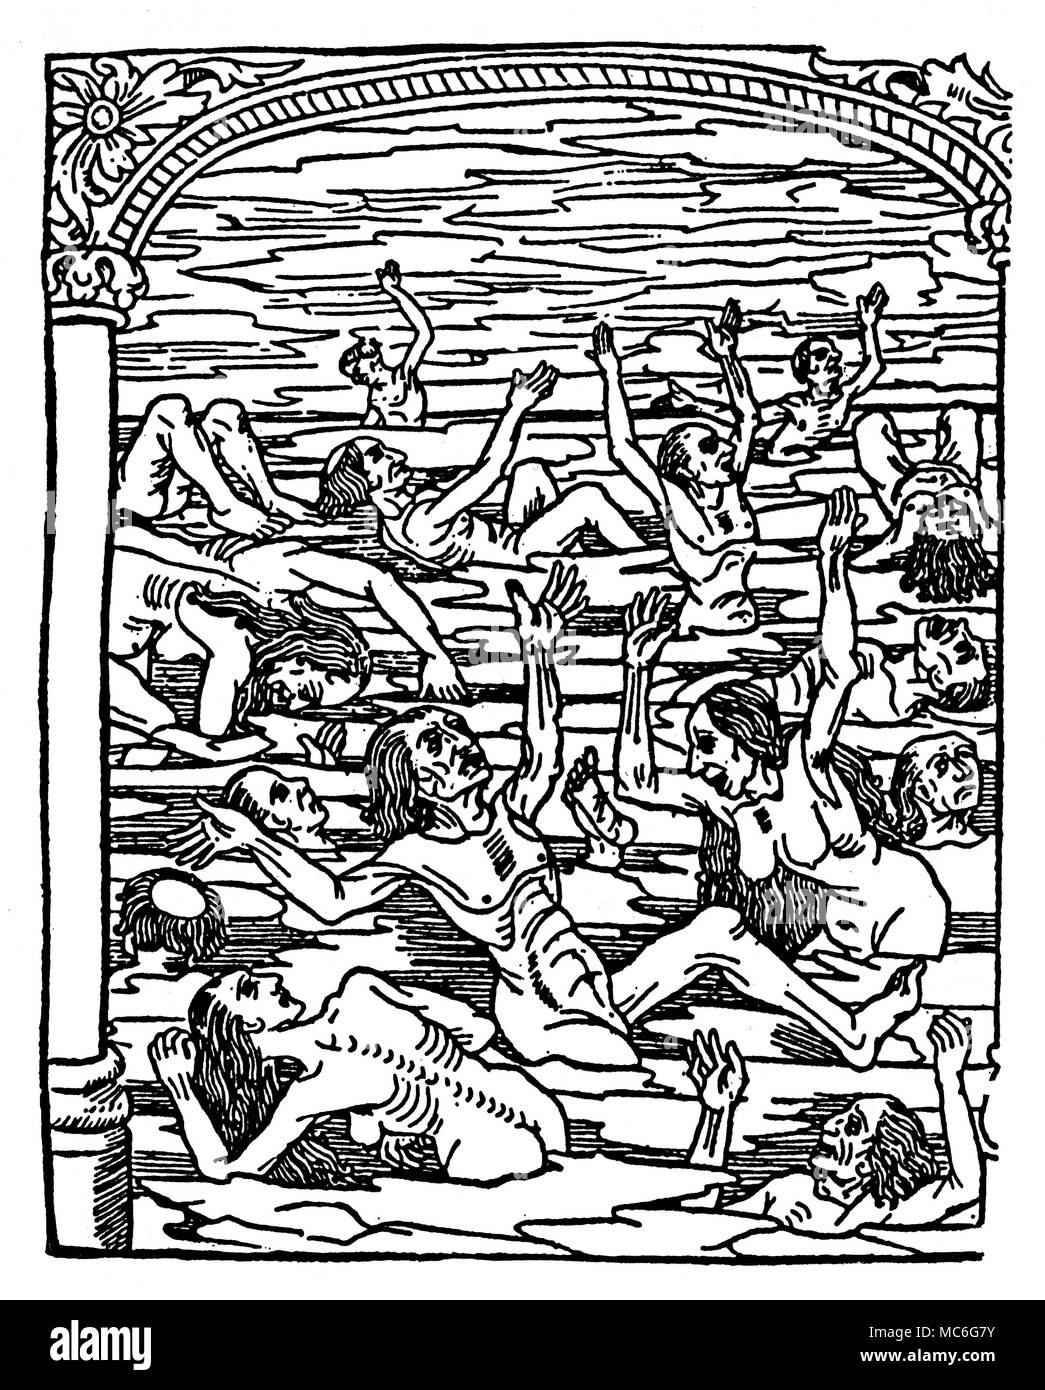 L'INFERNO peccatori nel mare di ghiaccio, nell'inferno. Da Le concessione Kalendrier & compost des Bergiers avecq leur Astrologie, circa 1500. Foto Stock